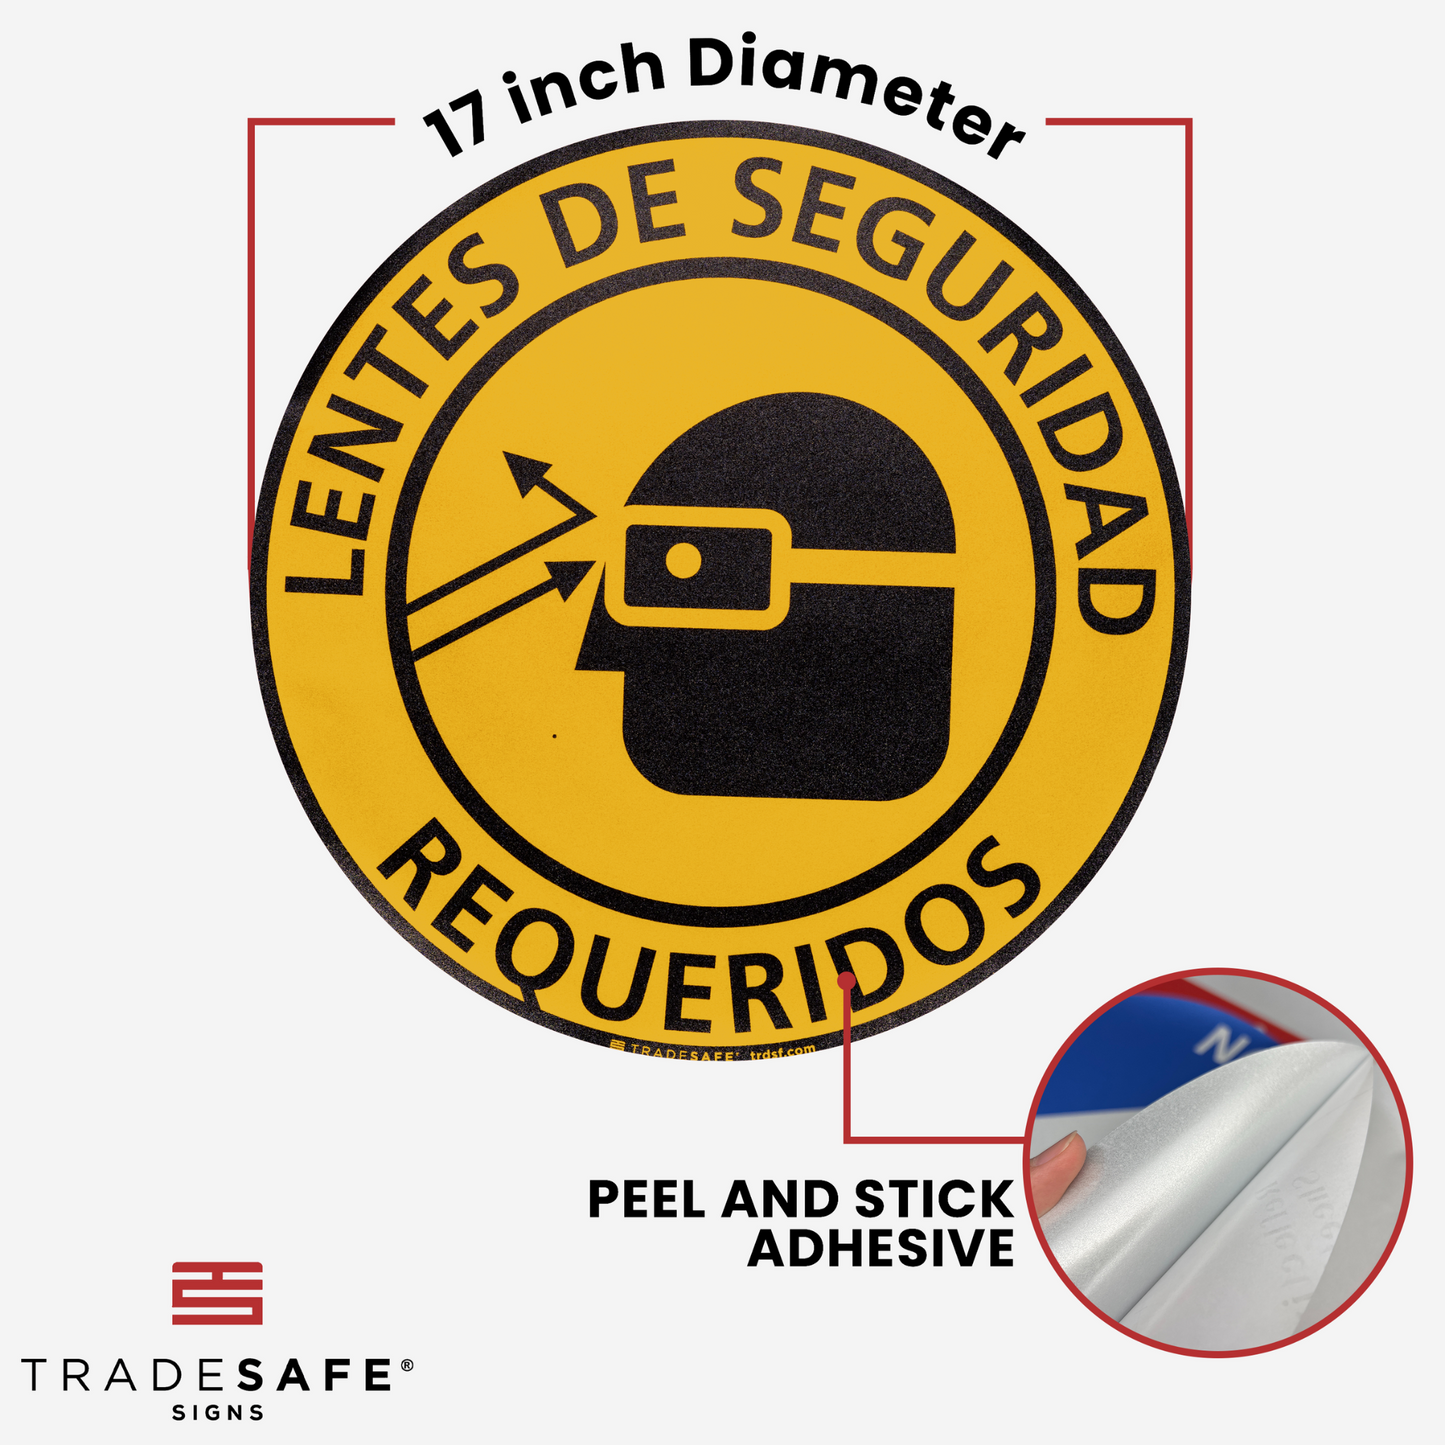 dimensions of "lentes de seguridad requeridos" sign